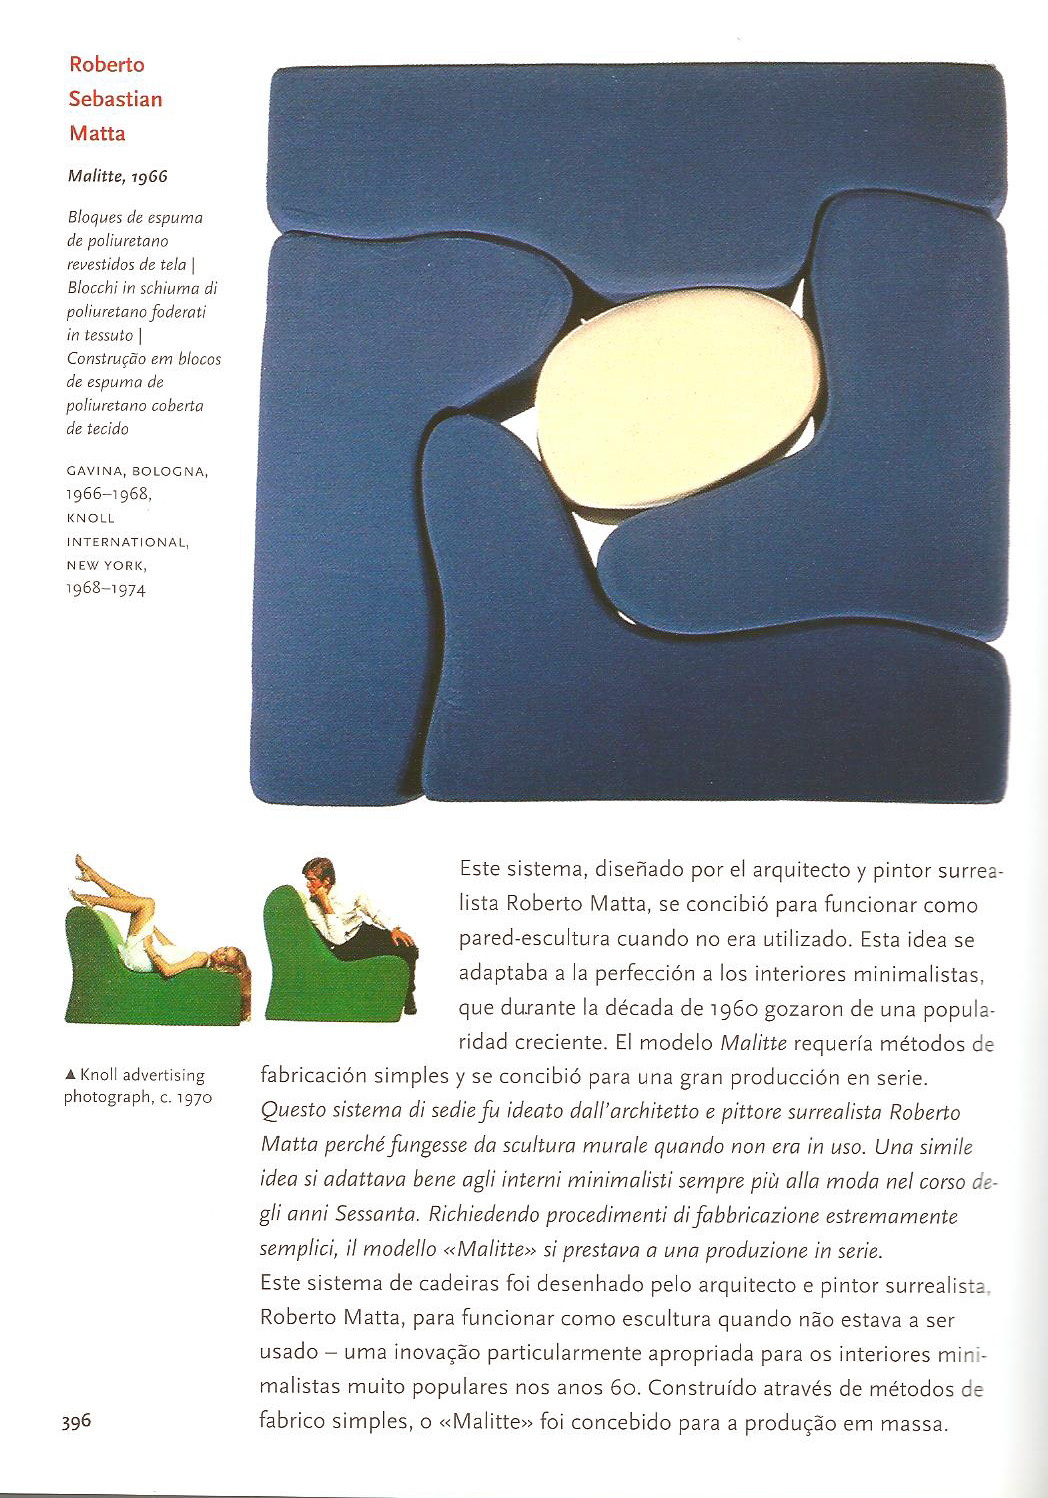 Sebastian matta: Divano Design Gavina malitte del XX Secolo Opera originale e disponibile - Robertaebasta® Art Gallery opere d’arte esclusive.